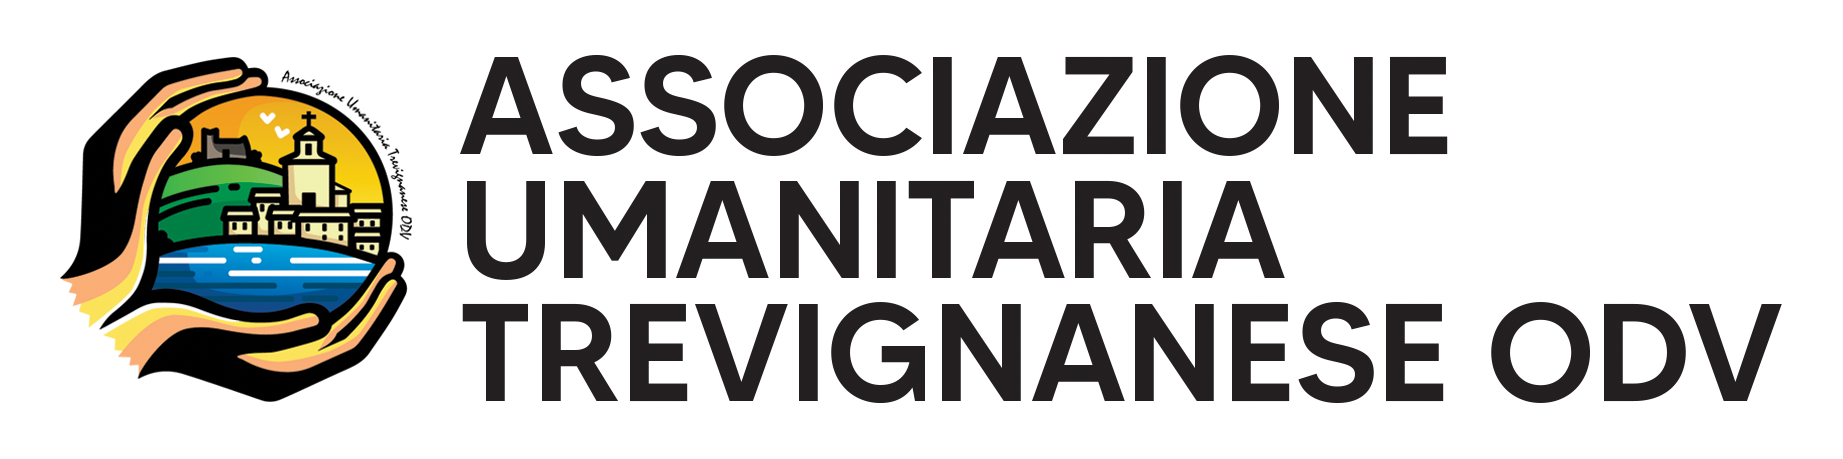 Associazione Umanitaria Trevignanese ODV